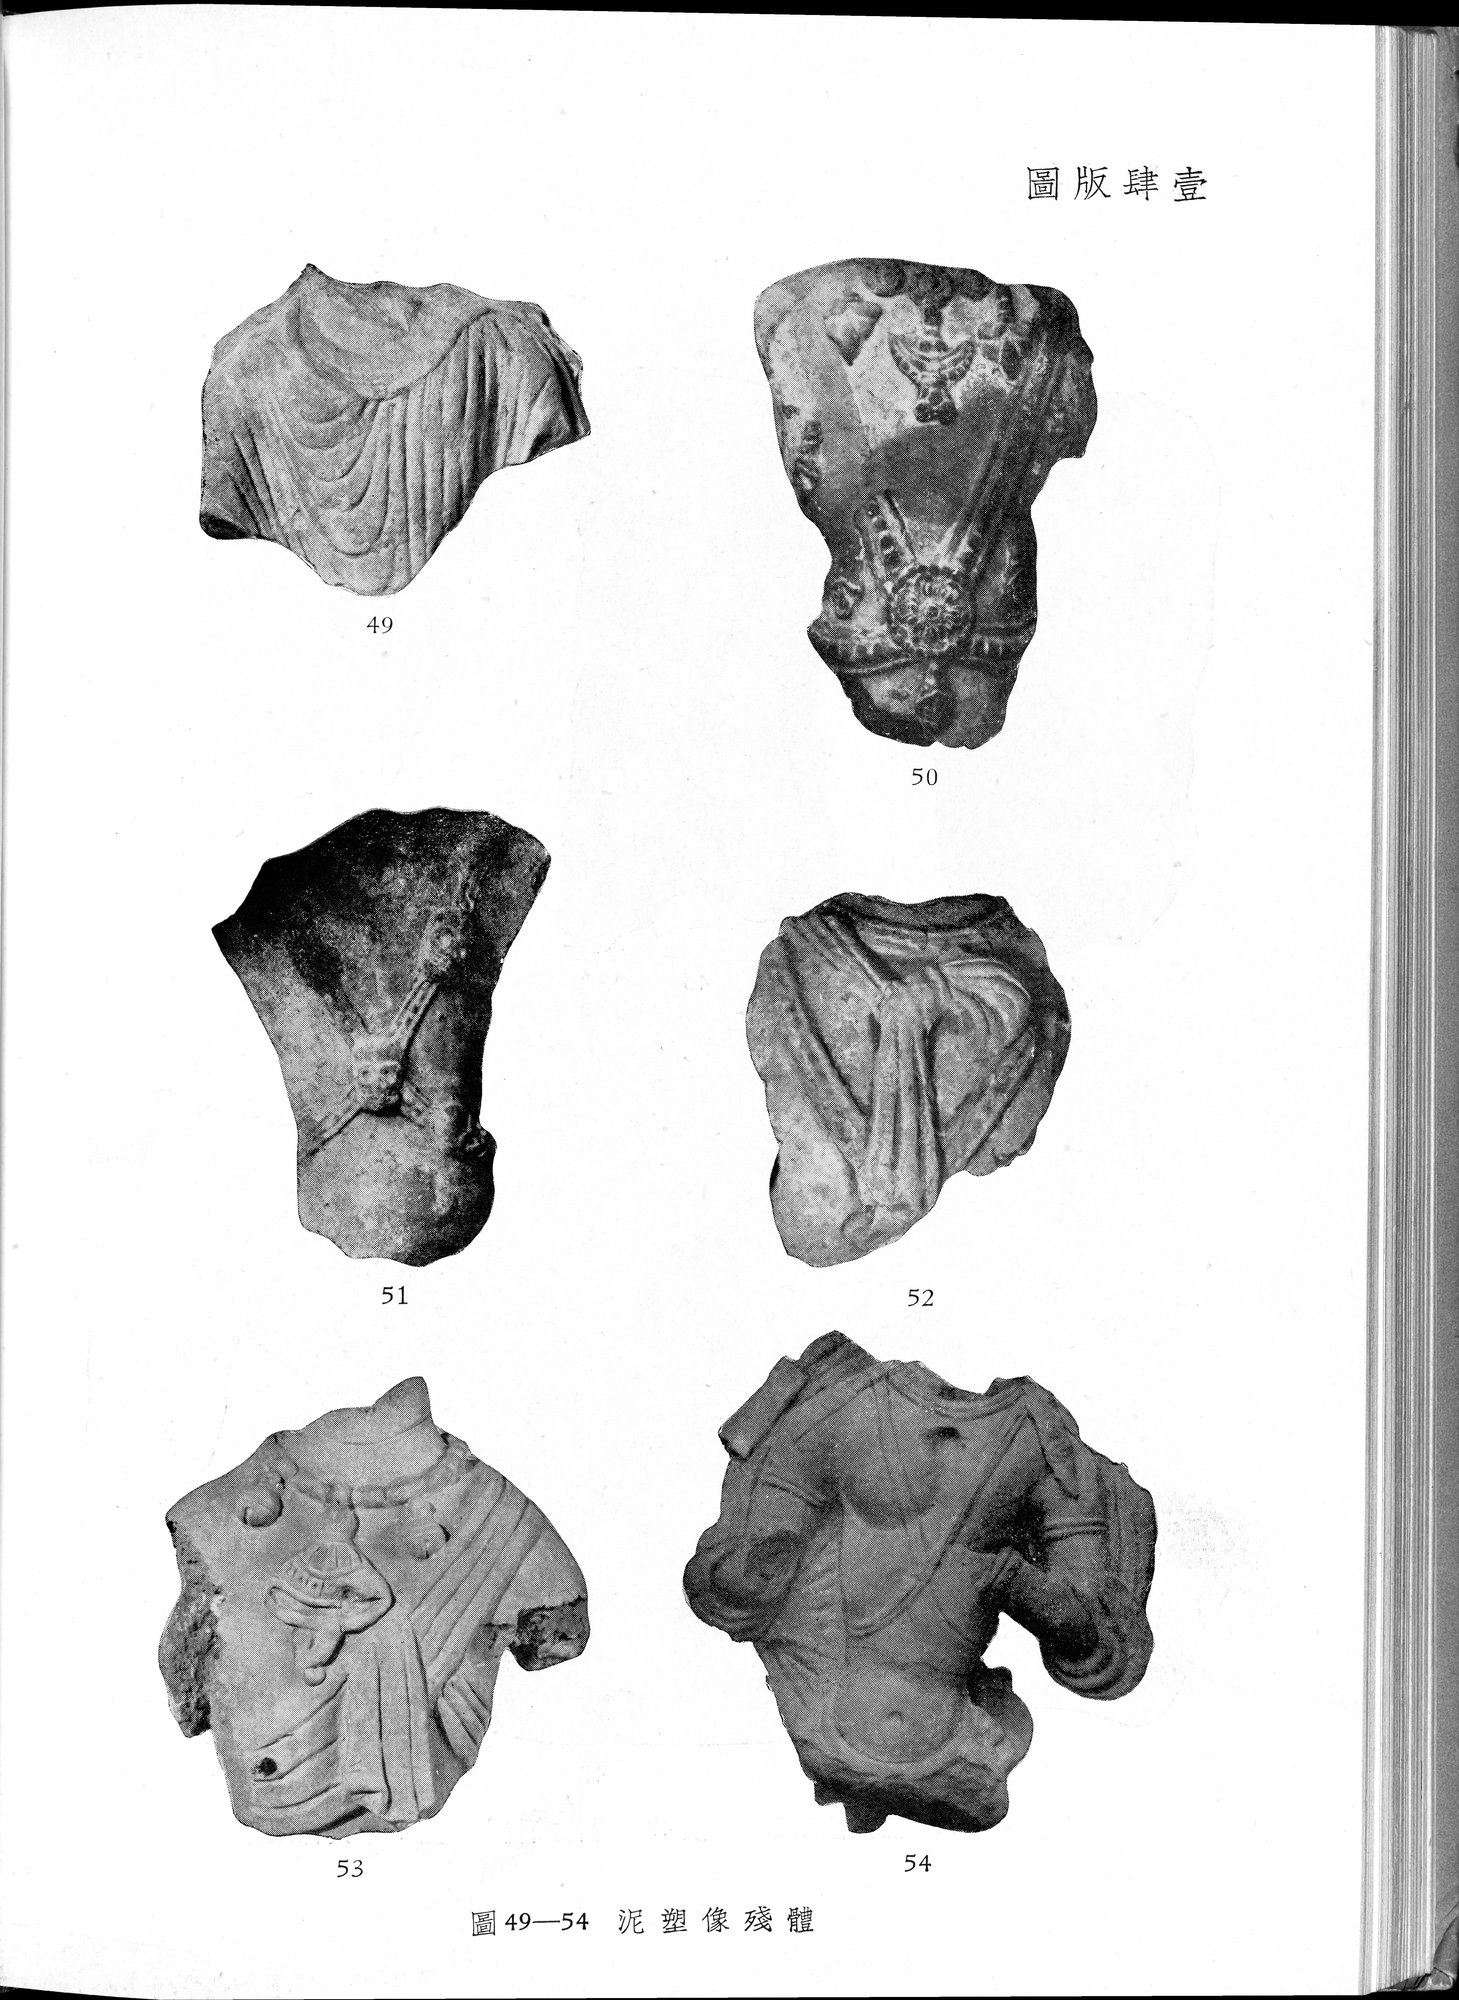 塔里木盆地考古記 : vol.1 / Page 264 (Grayscale High Resolution Image)